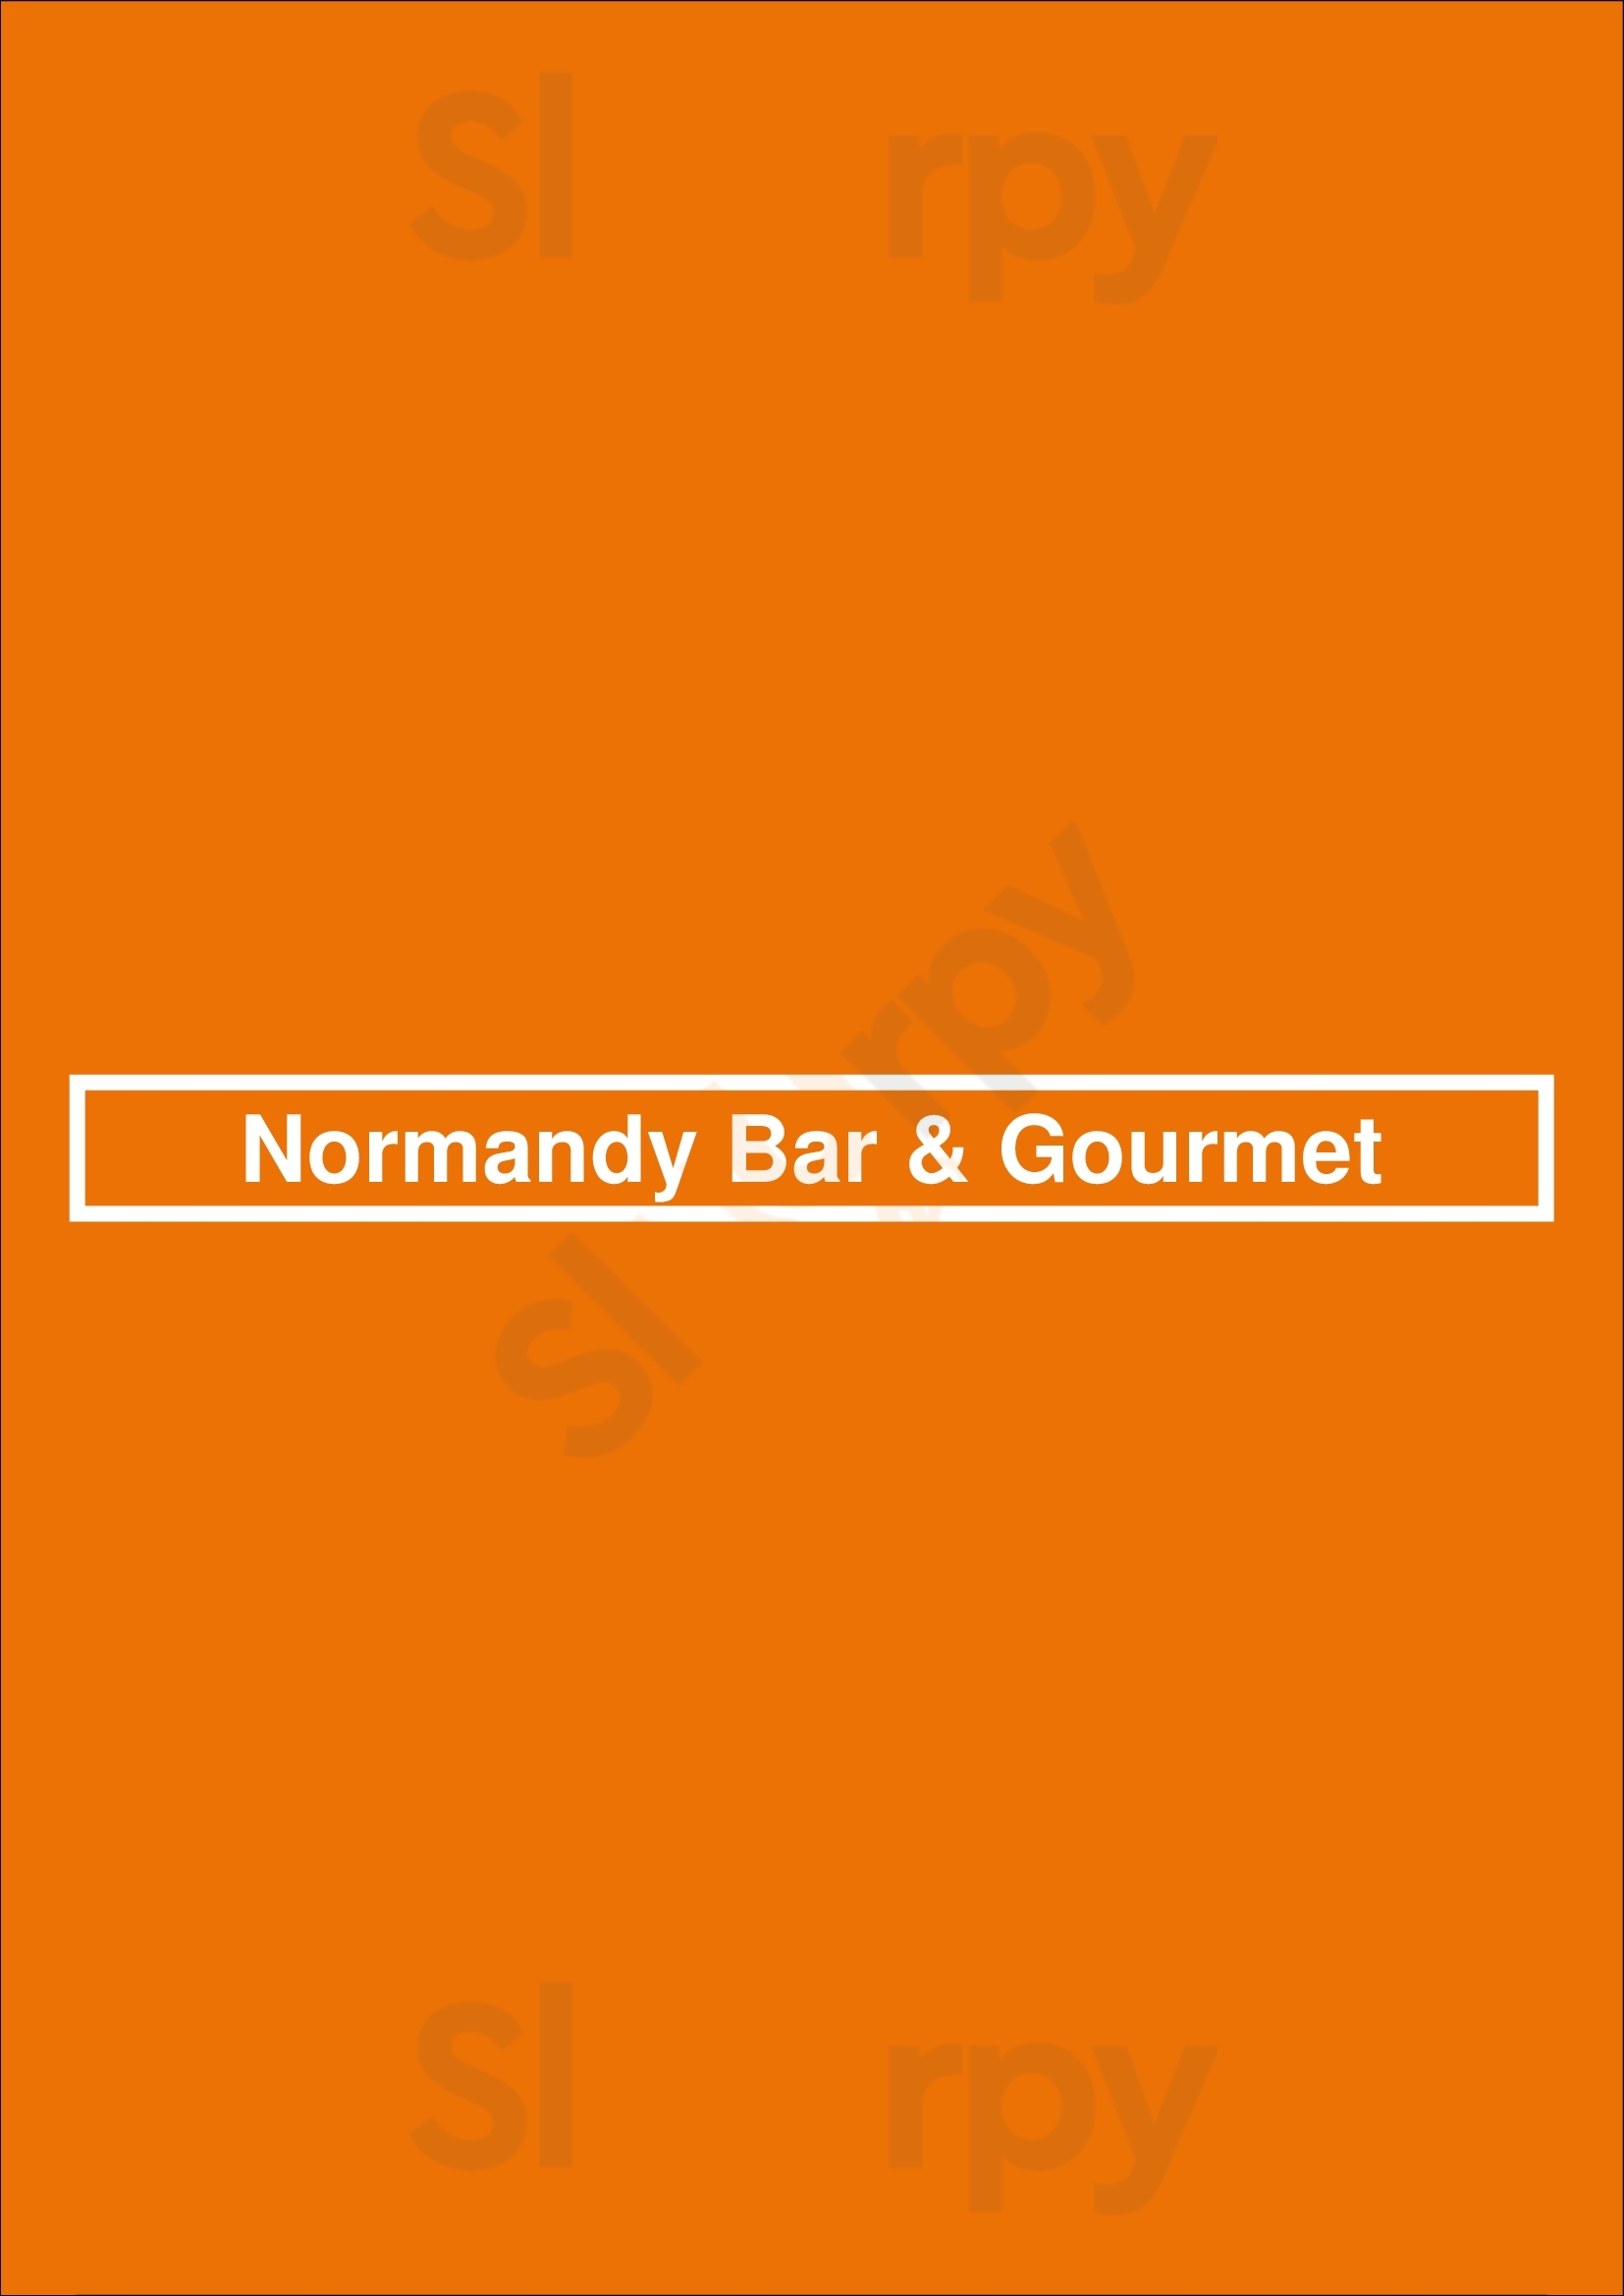 Normandy Bar & Gourmet Maastricht Menu - 1